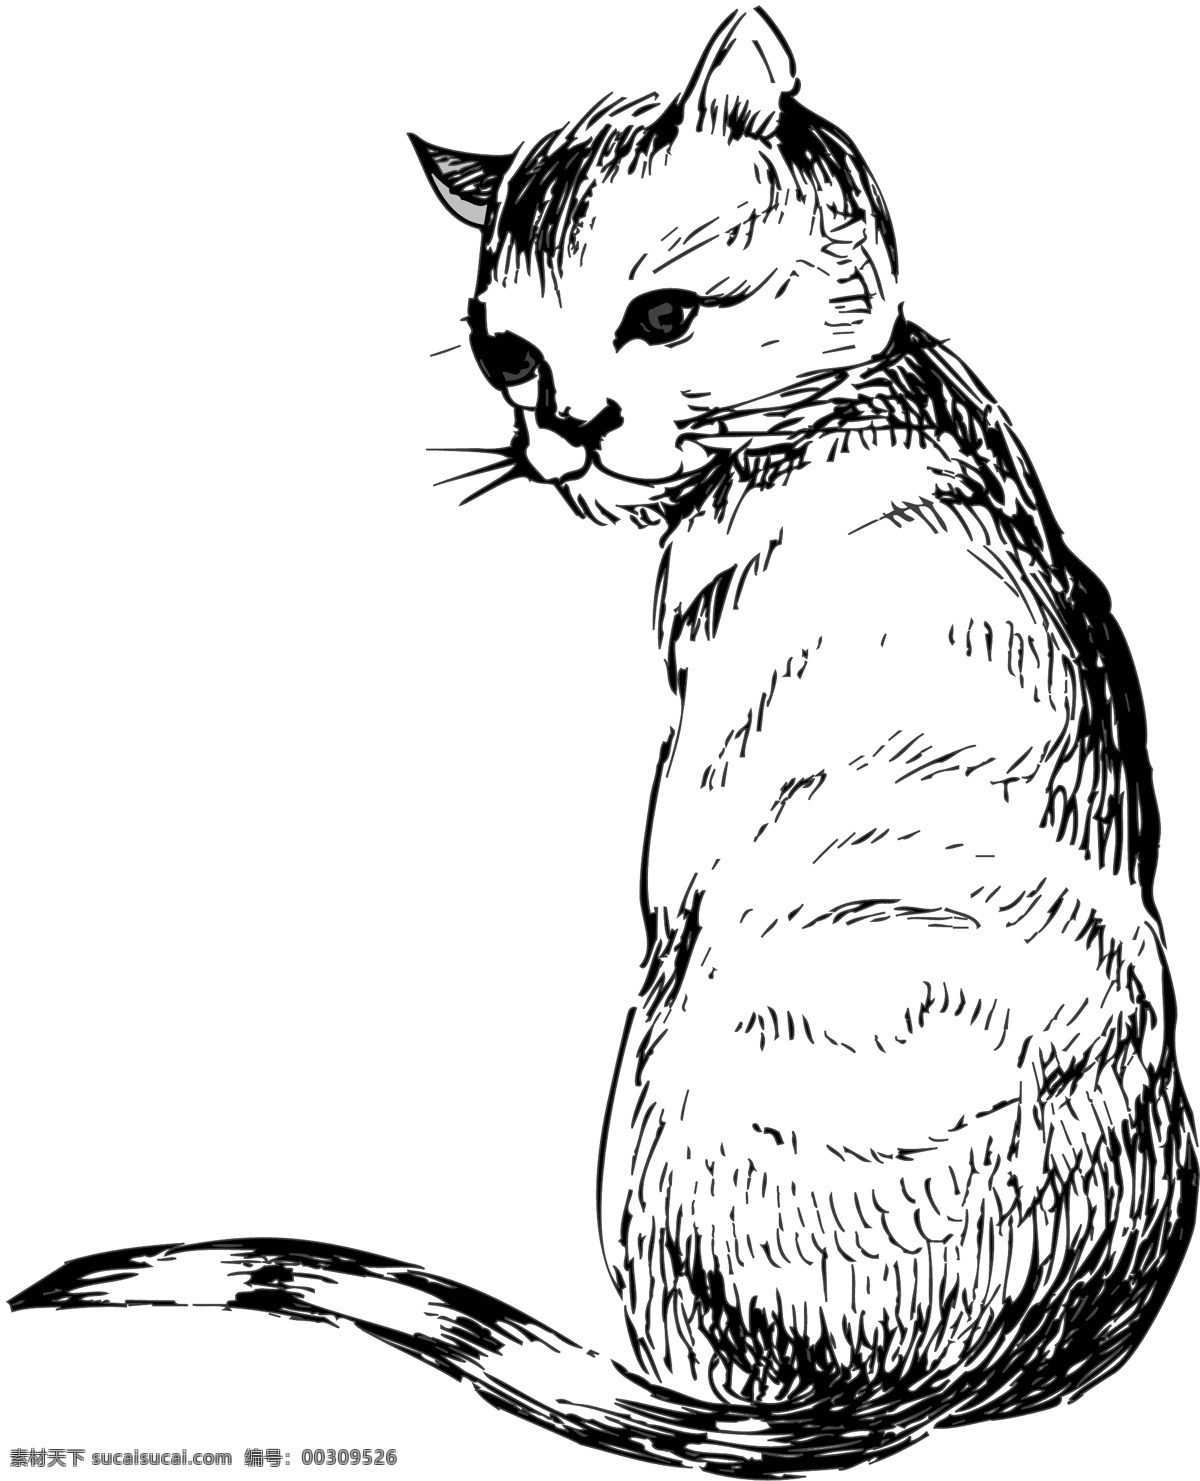 宠物猫 矢量素材 格式 eps格式 设计素材 宠物世界 矢量动物 矢量图库 白色